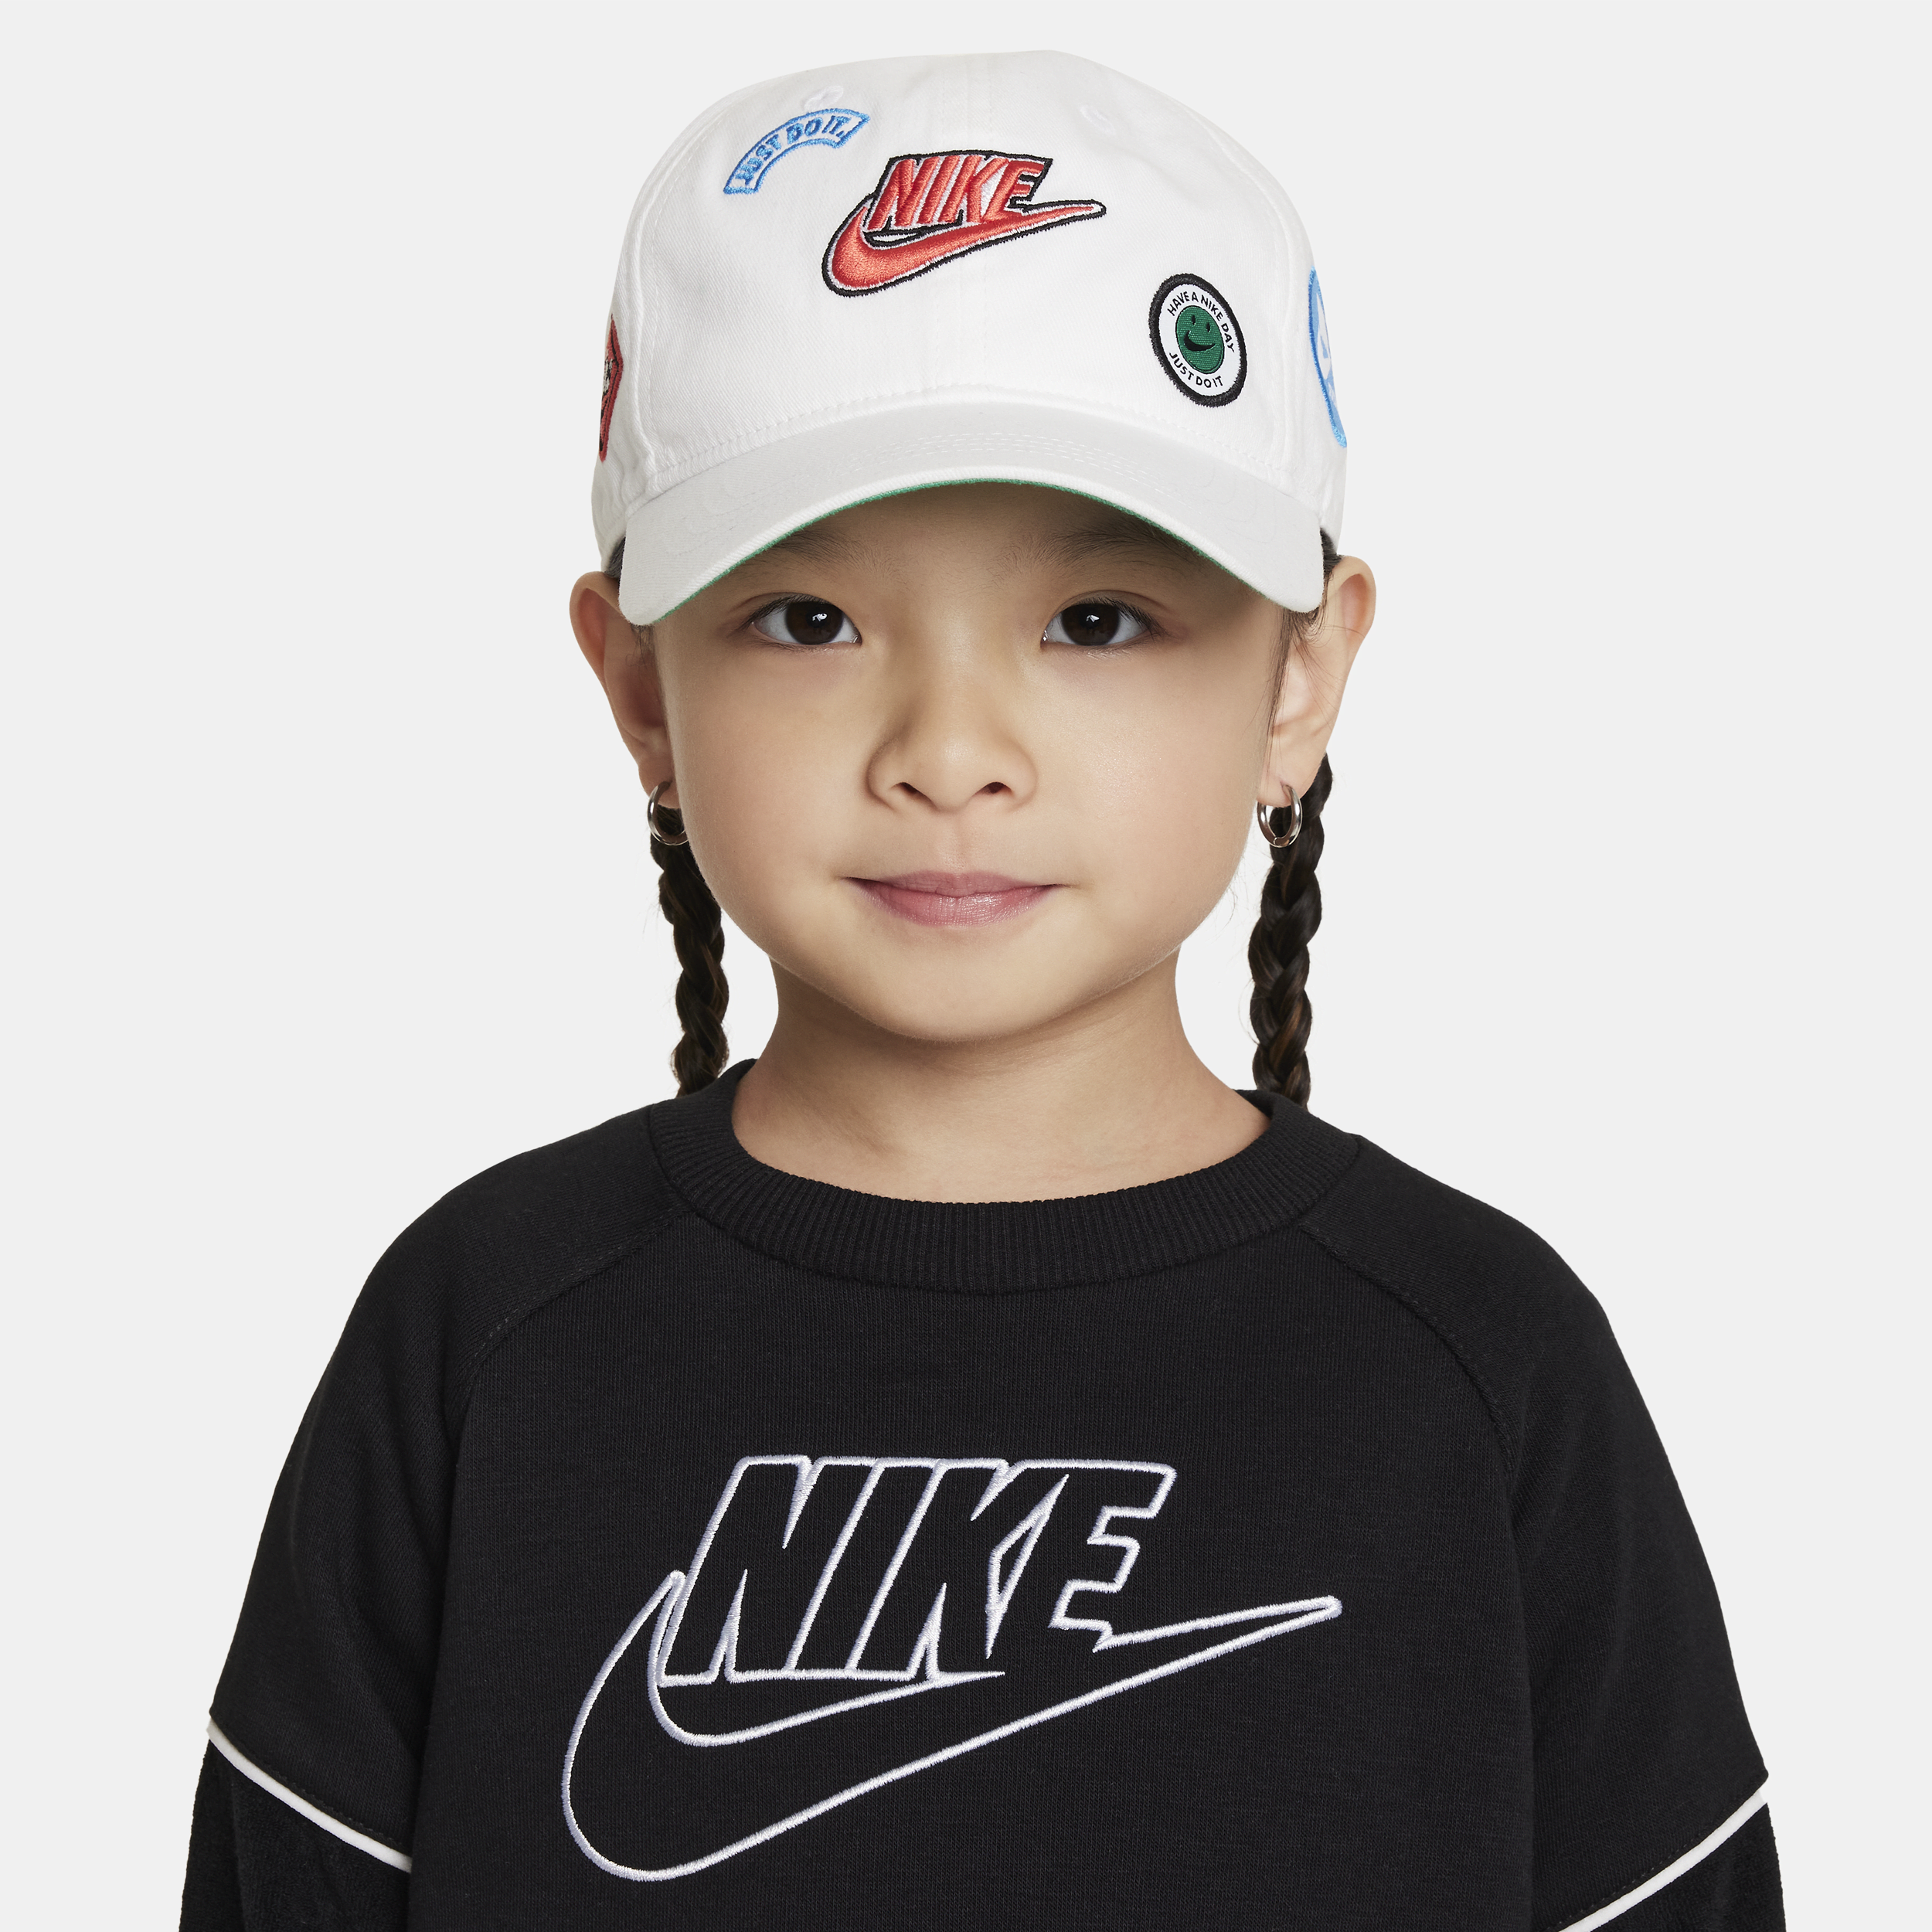 Nike Babies' "sense Of Adventure" Toddler Hat In White